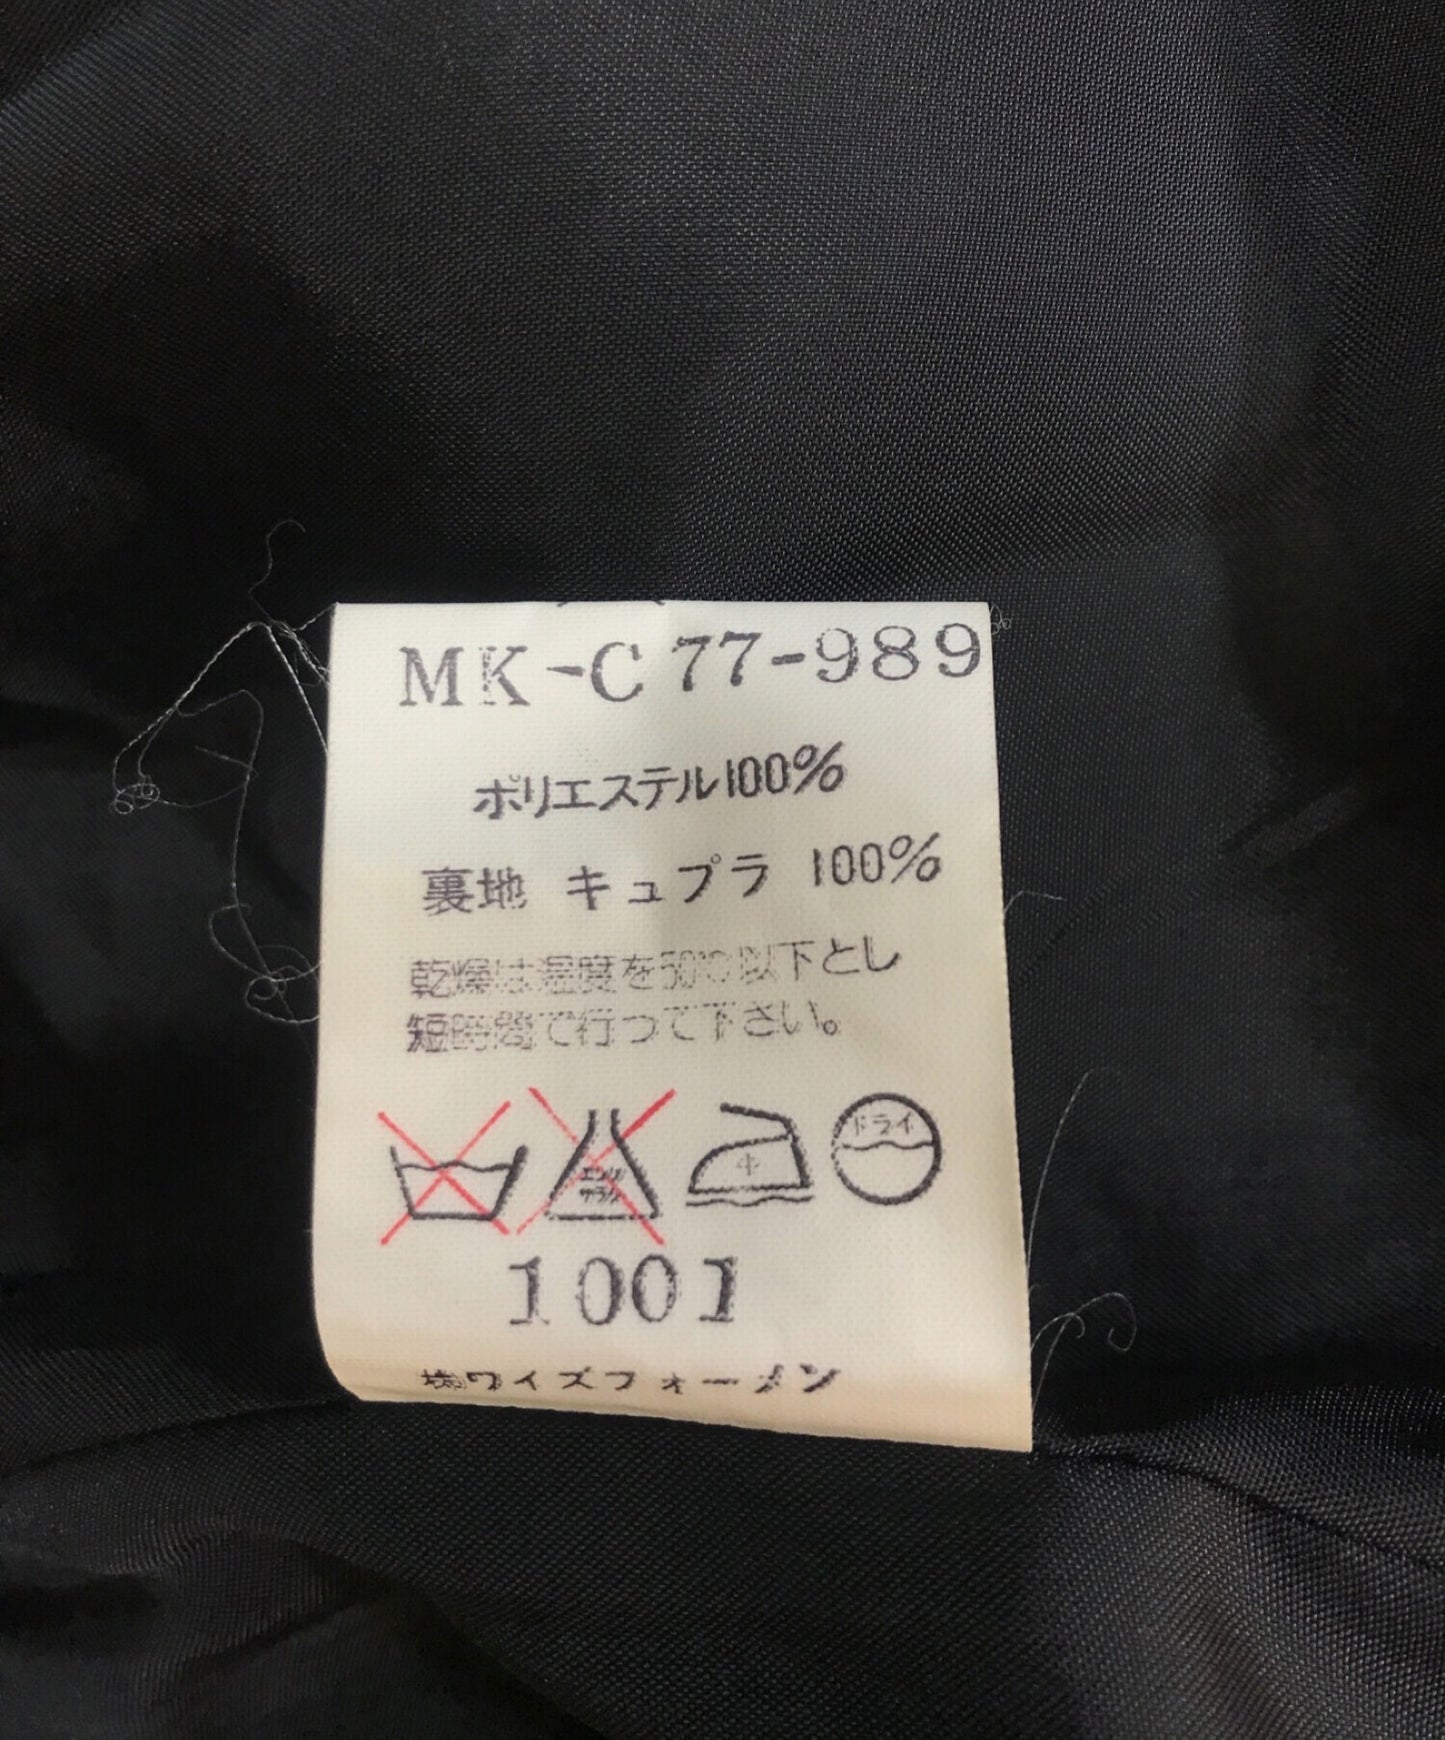 Yohji Yamamoto [มือสอง] พนักงานเสื้อคลุม MK-C77-989